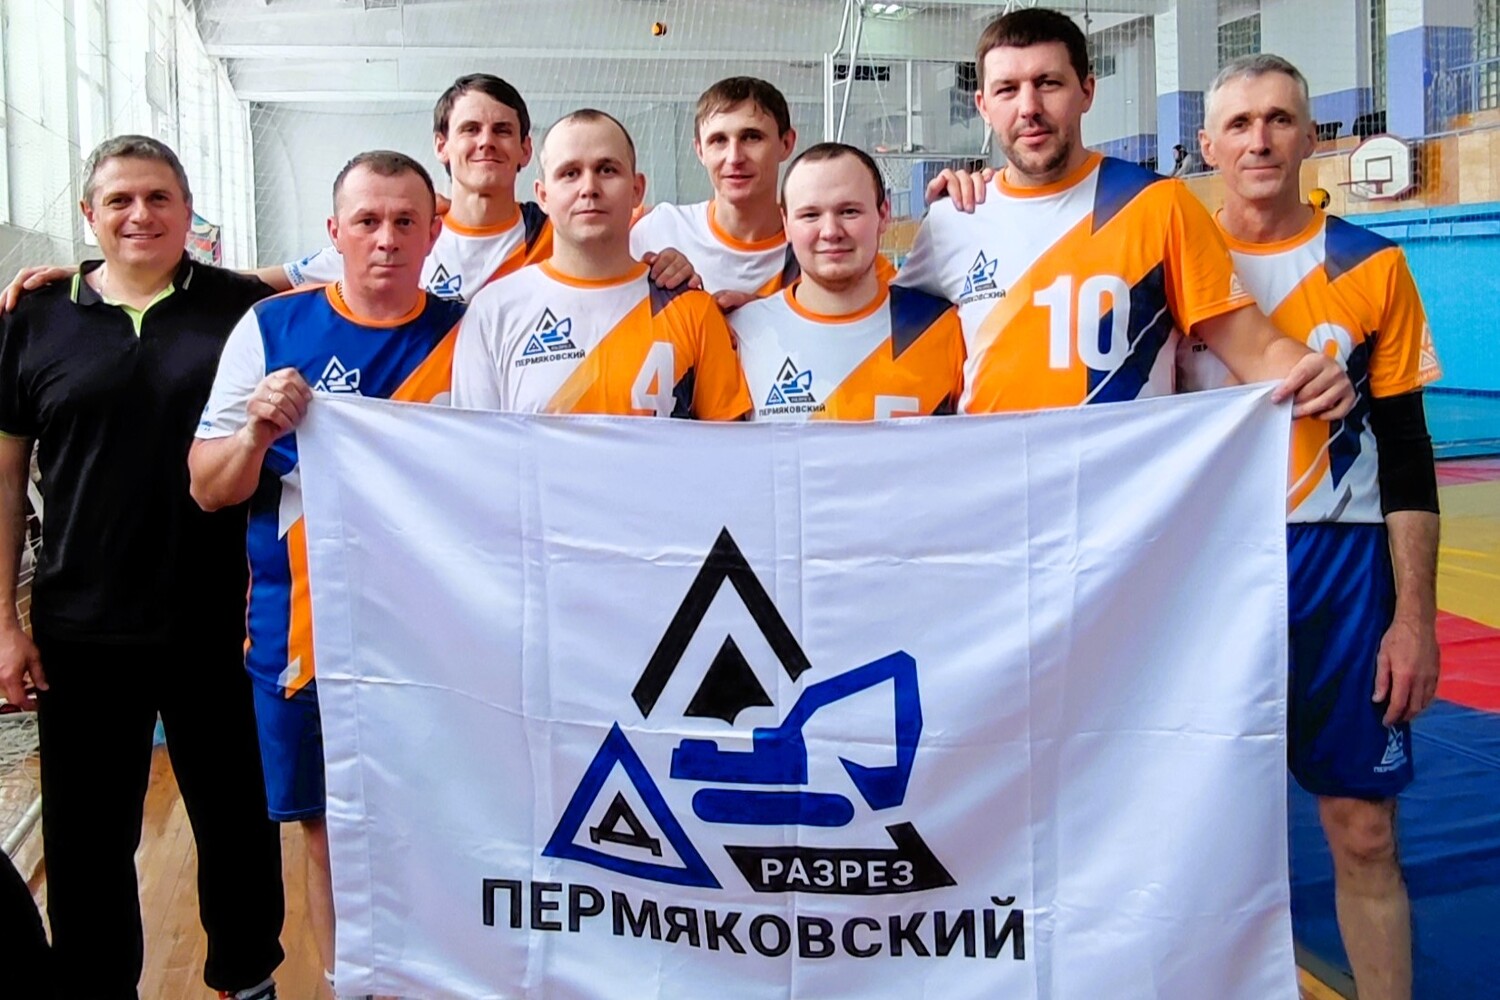 Разрез Пермяковский занял 1 место на соревнованиях по волейболу среди угольщиков. Стройсервис